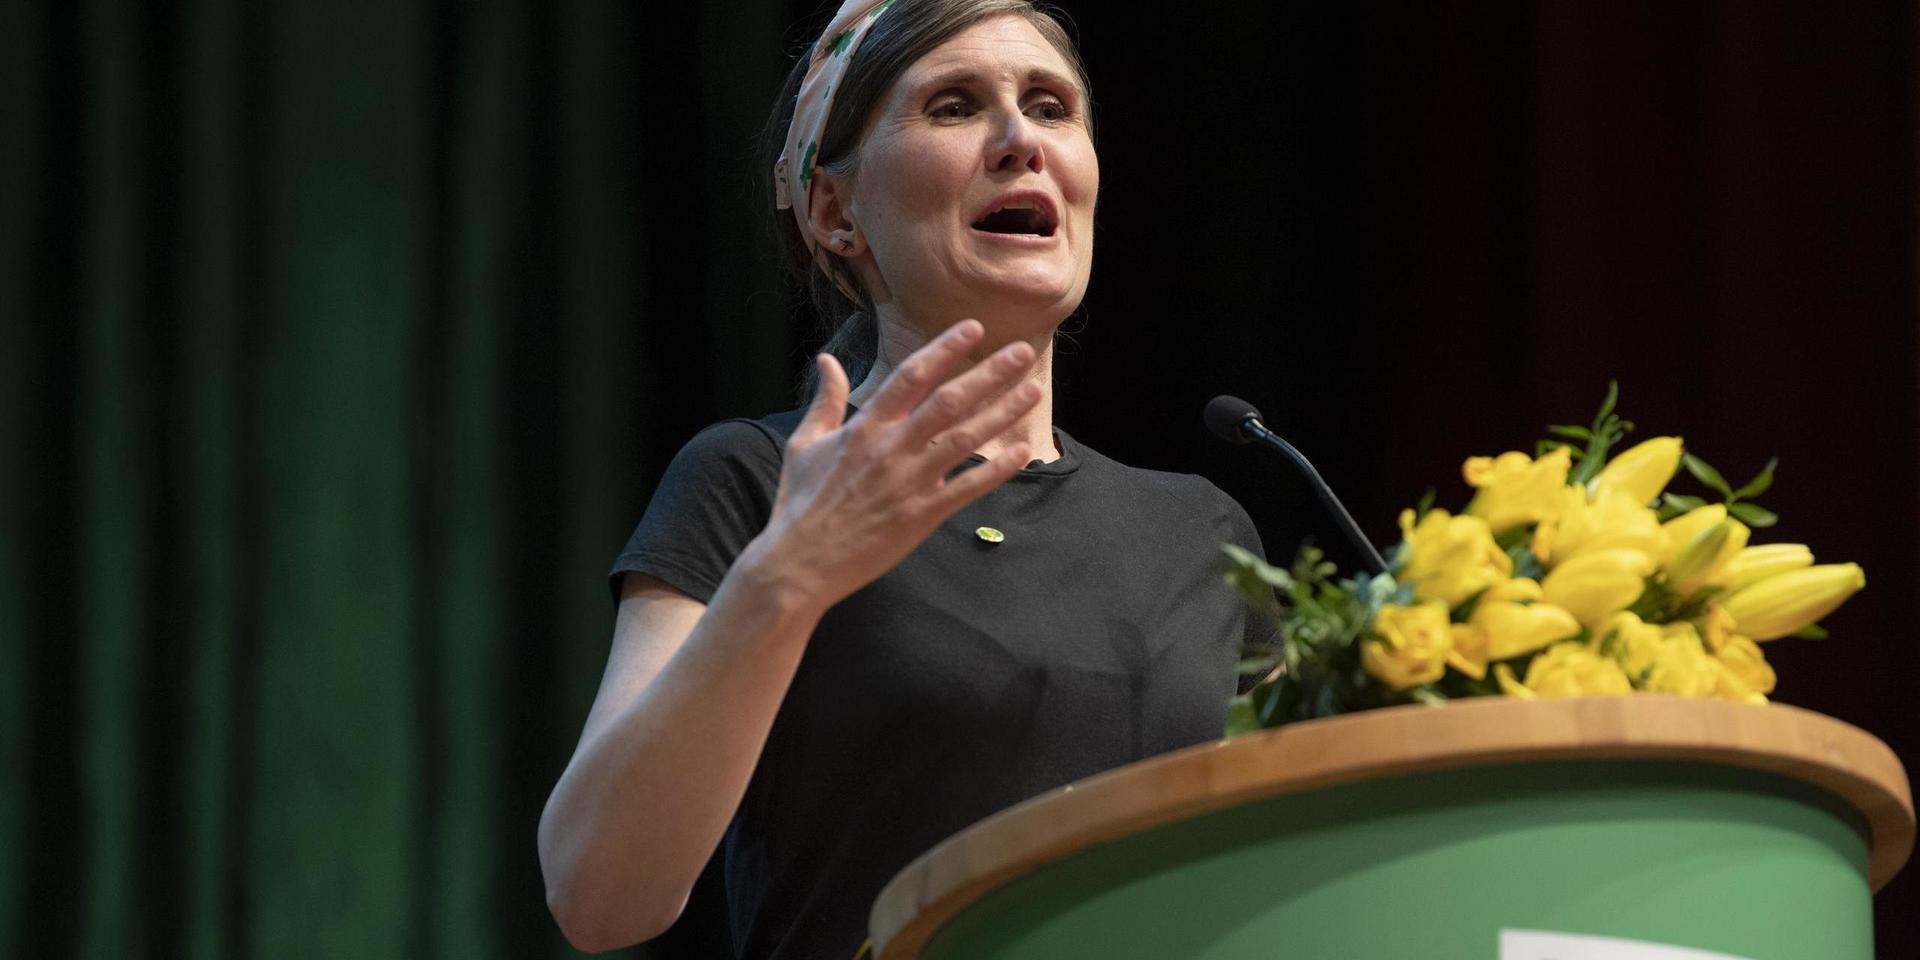 Märta Stenevi valdes på Miljöpartiets kongress 2019 till ny partisekreterare.